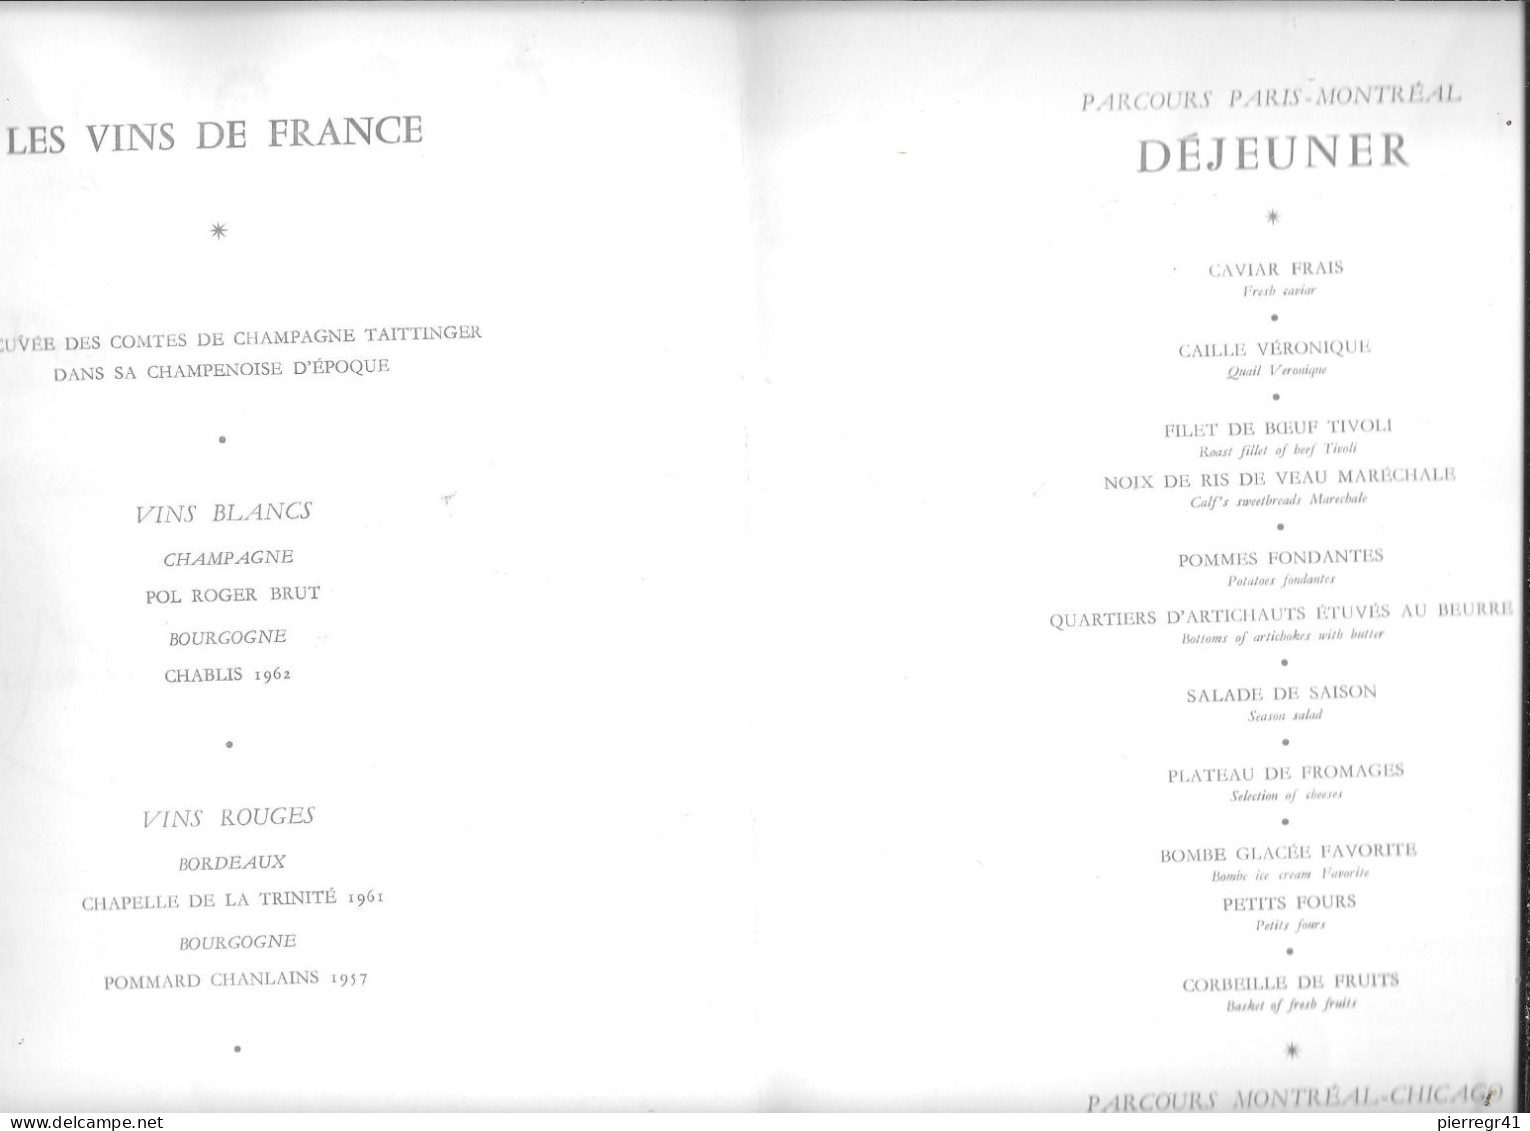 MENU-1966-AIR FRANCE-MENU-CHATEAUX De France-VILLANDRY-Dessin-P.Pages-VOL-PARIS/CHICAGO-TBE-RARE - Menus